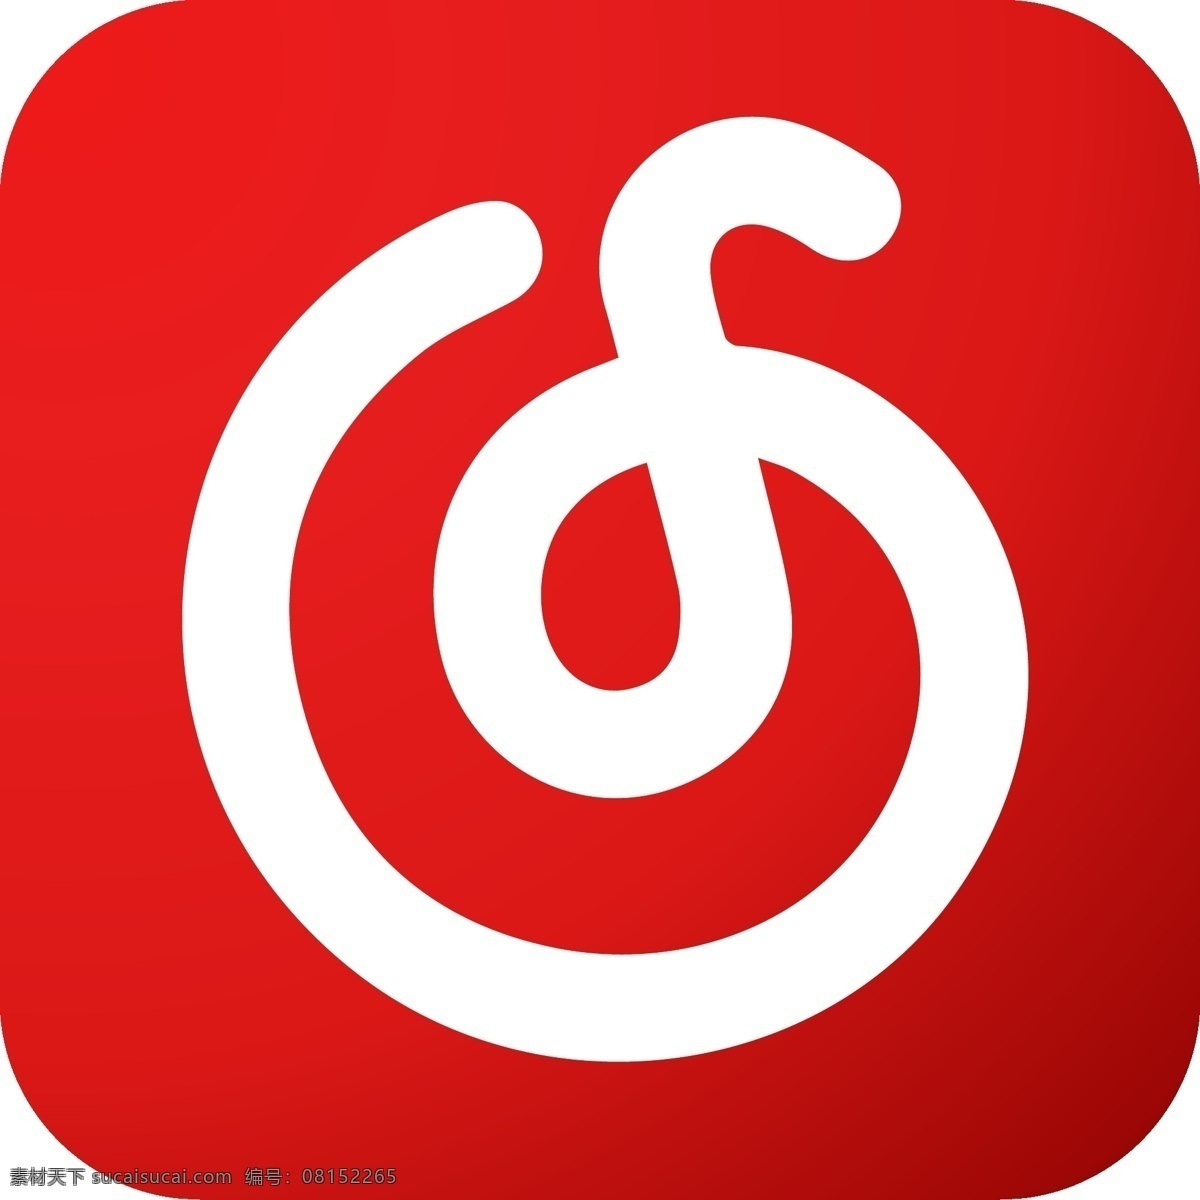 网易云音乐 图标 logo 红色